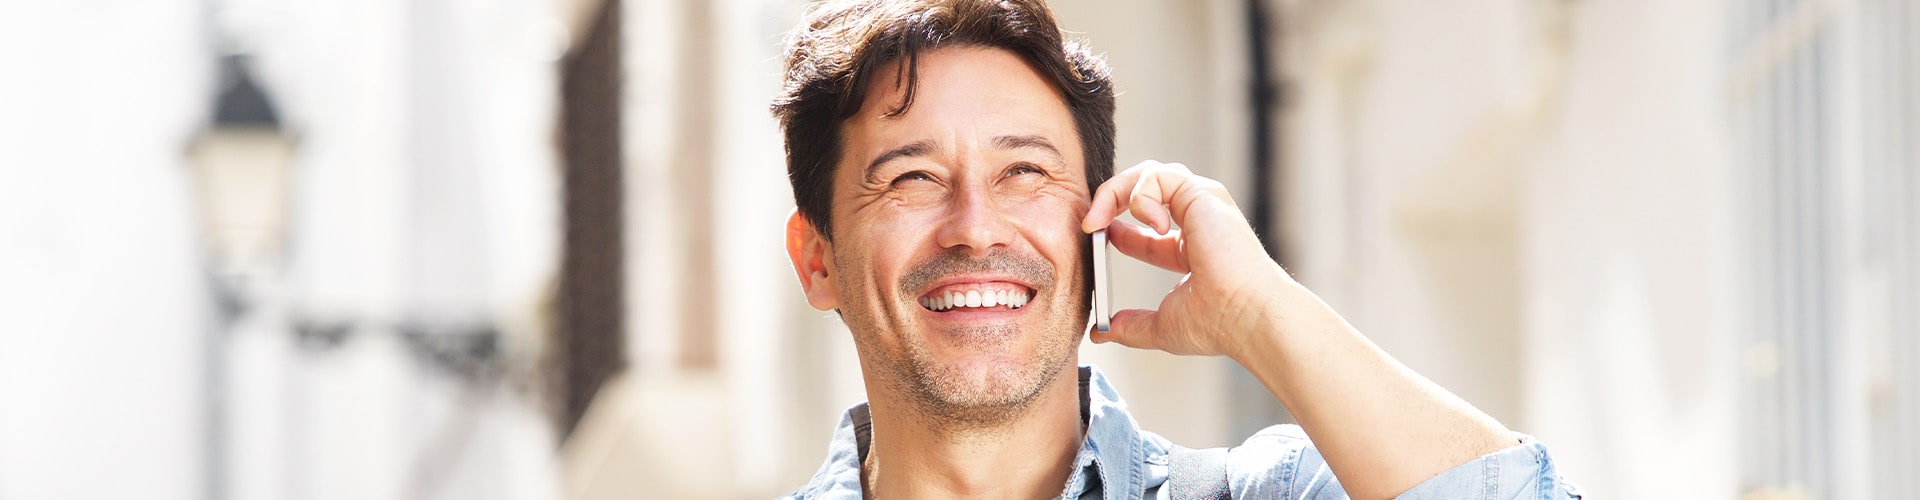 man smiling on phone